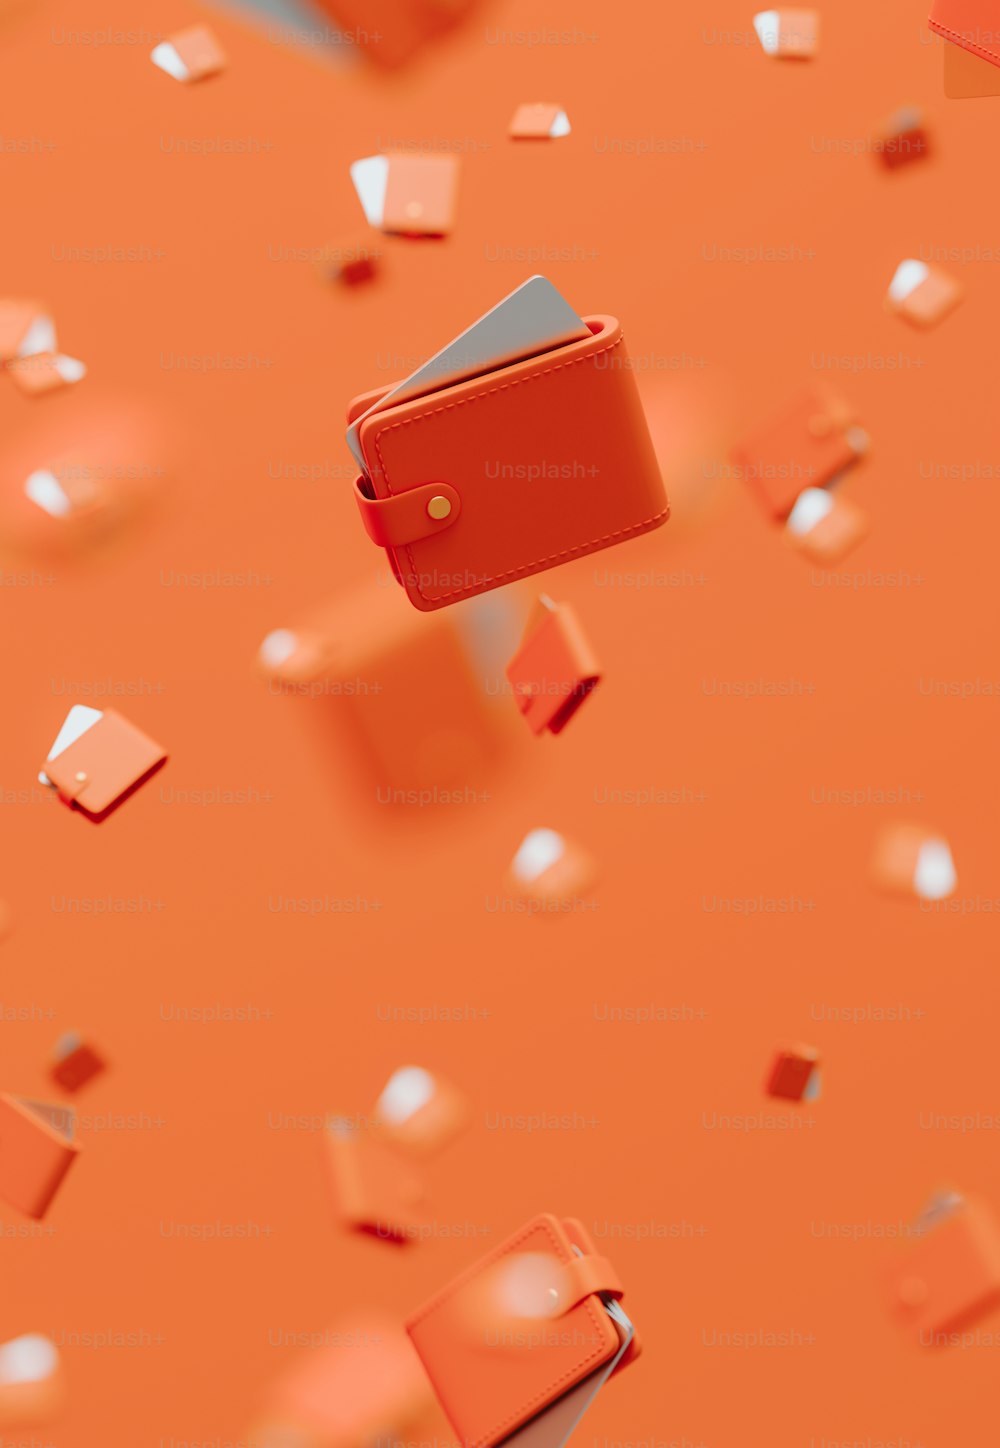 Una billetera roja volando por el aire sobre un fondo naranja